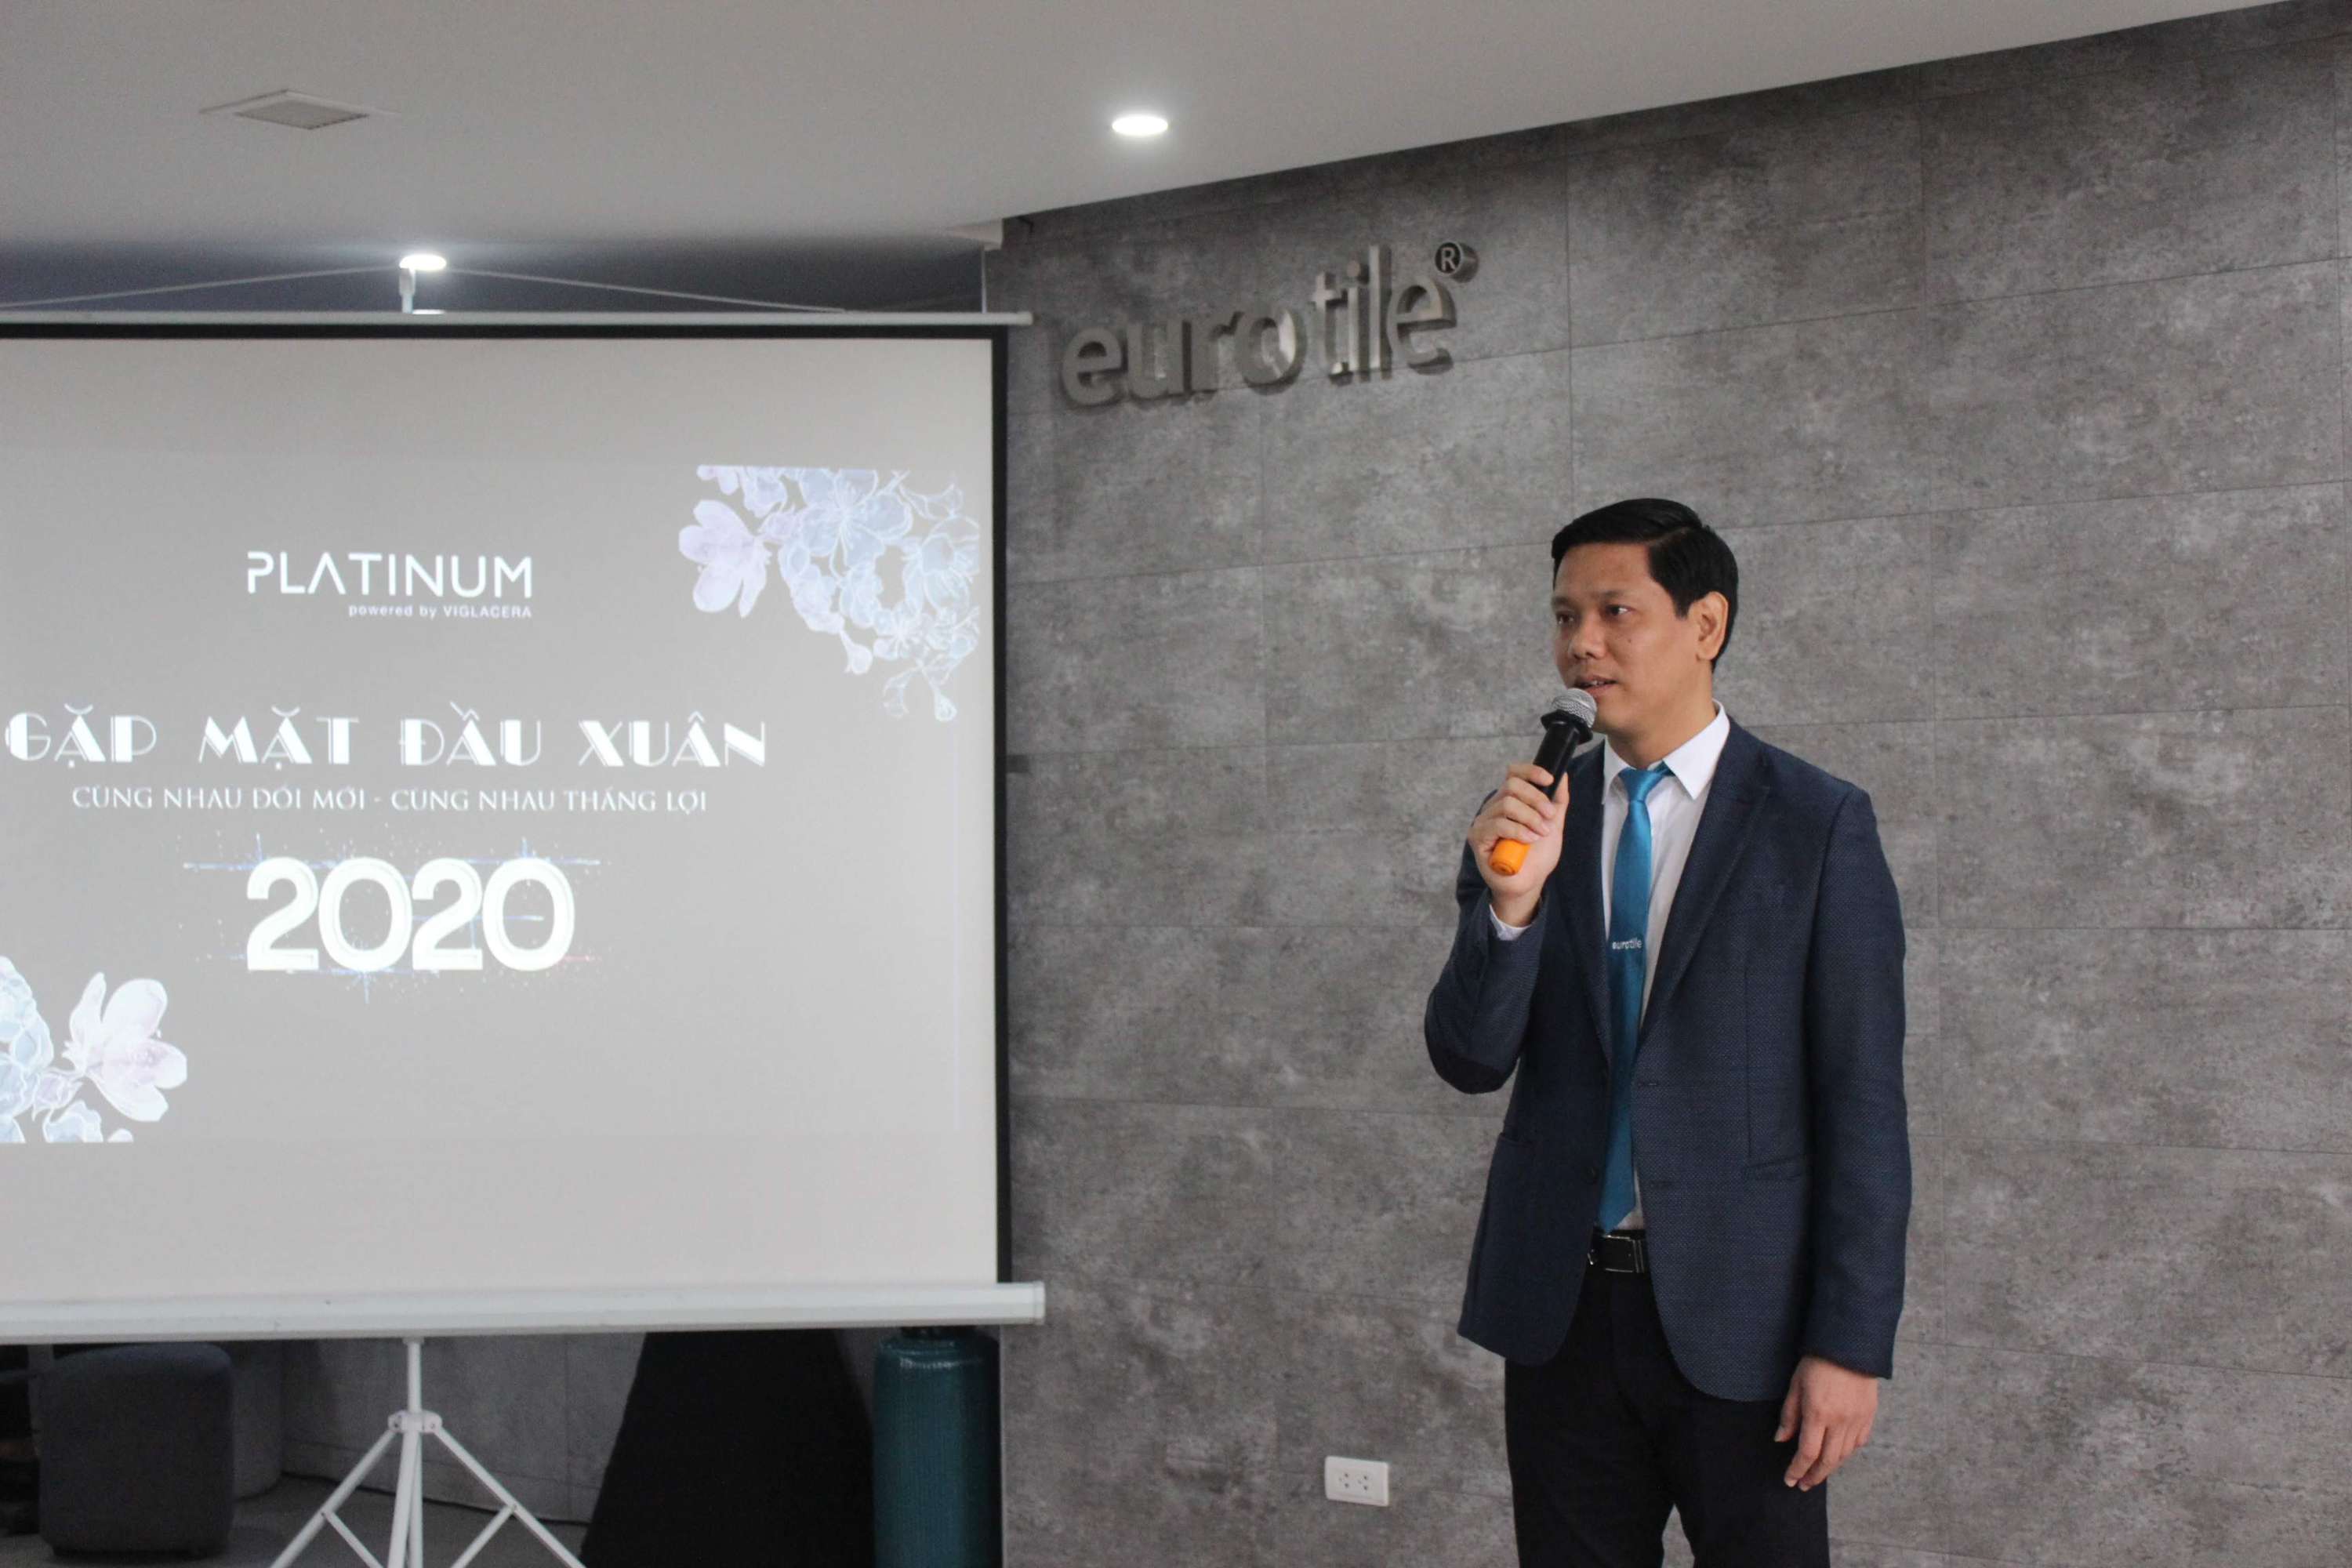 Xuân Canh Tí 2020: Viglacera ra mắt thương hiệu Viglacera Platinum và giới thiệu Eurotile Center tại Hà Nội